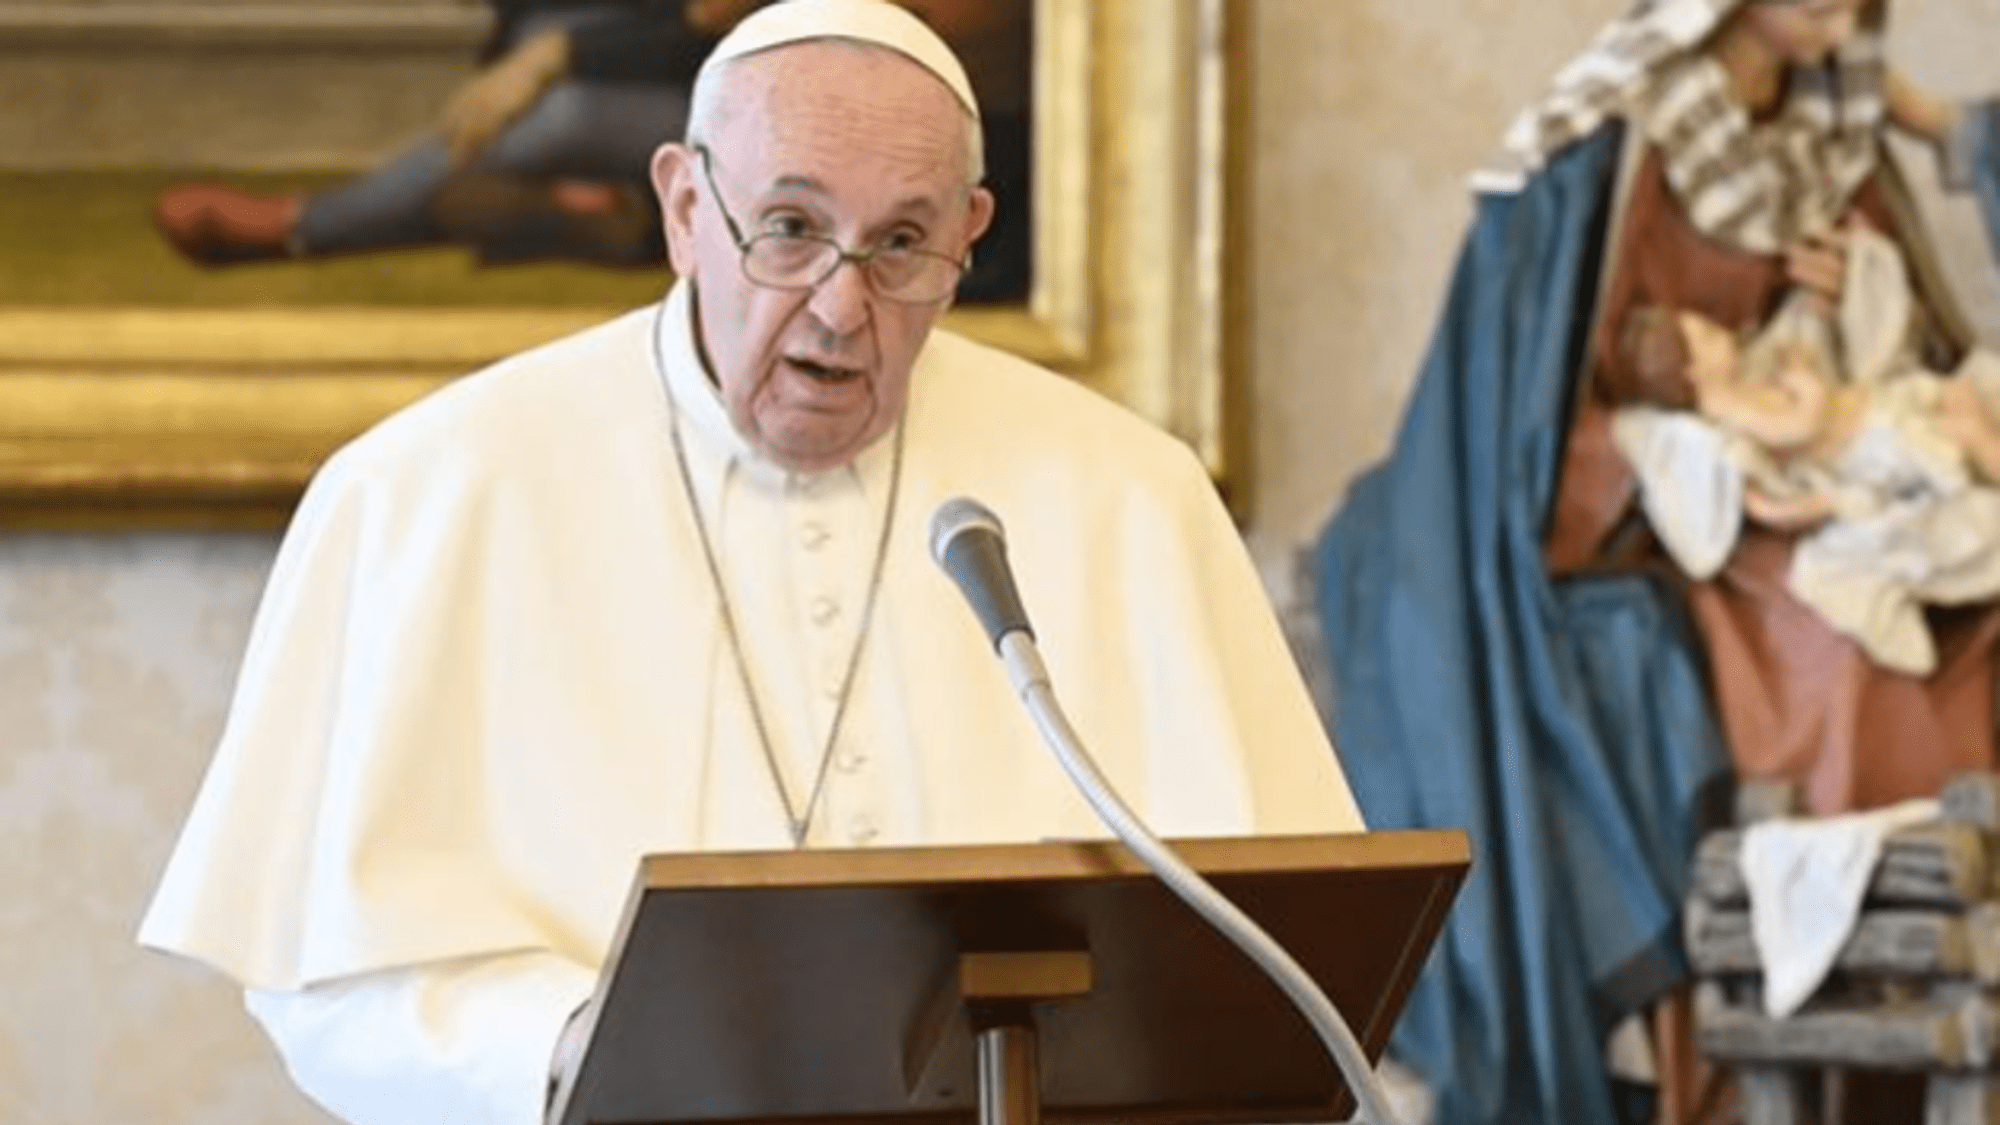 El Papa Francisco visita Irak con un mensaje de paz, unidad y esperanza